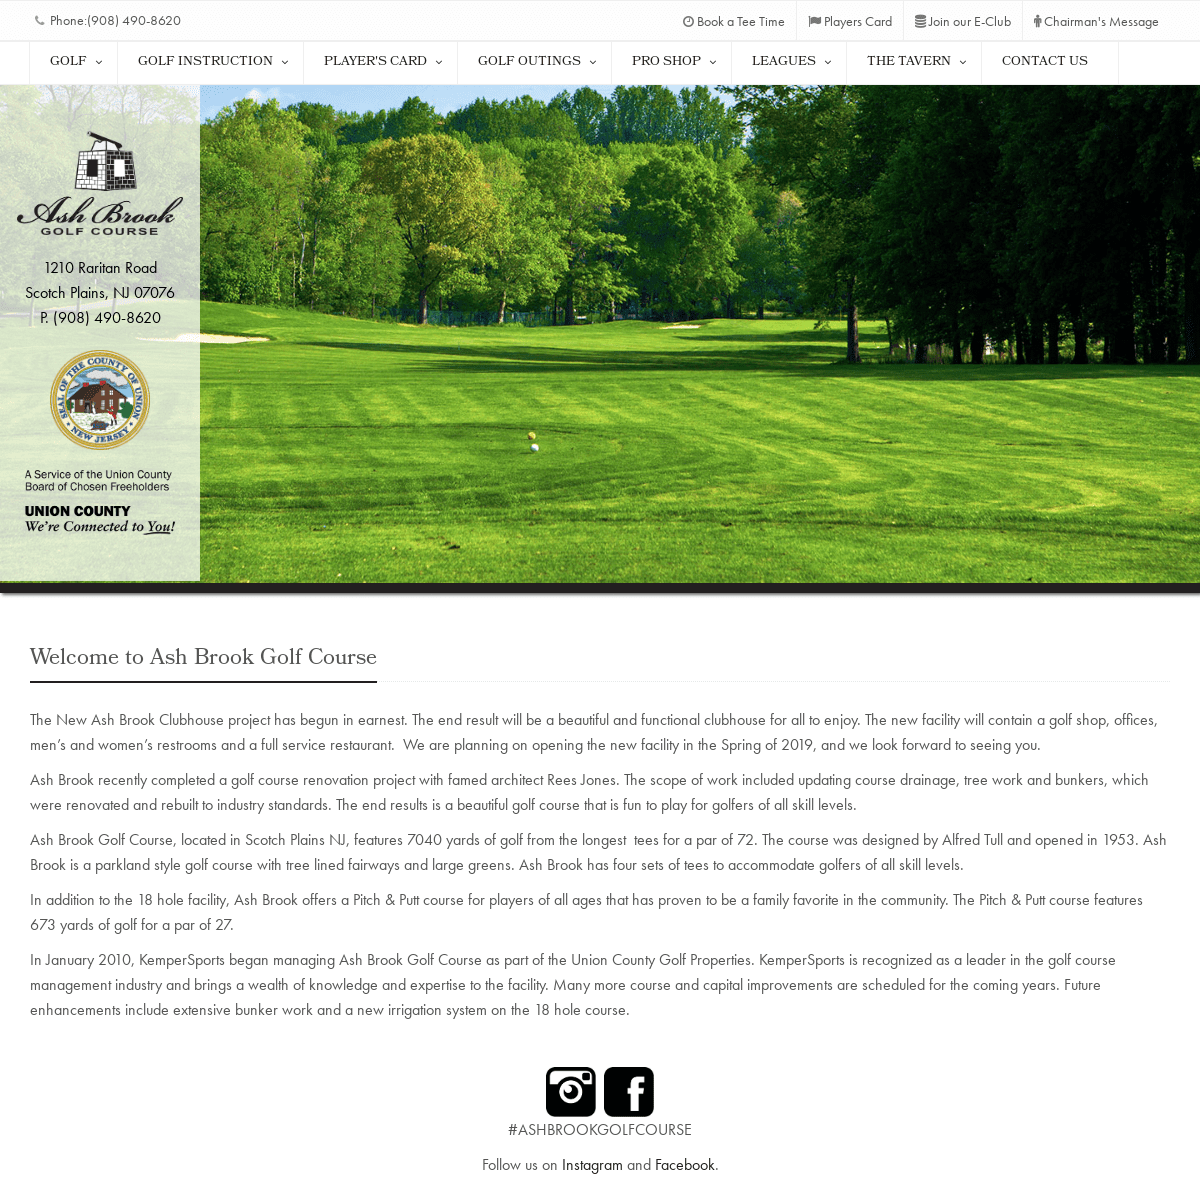 Ash Brook Golf Course - Scotch Plains, NJ